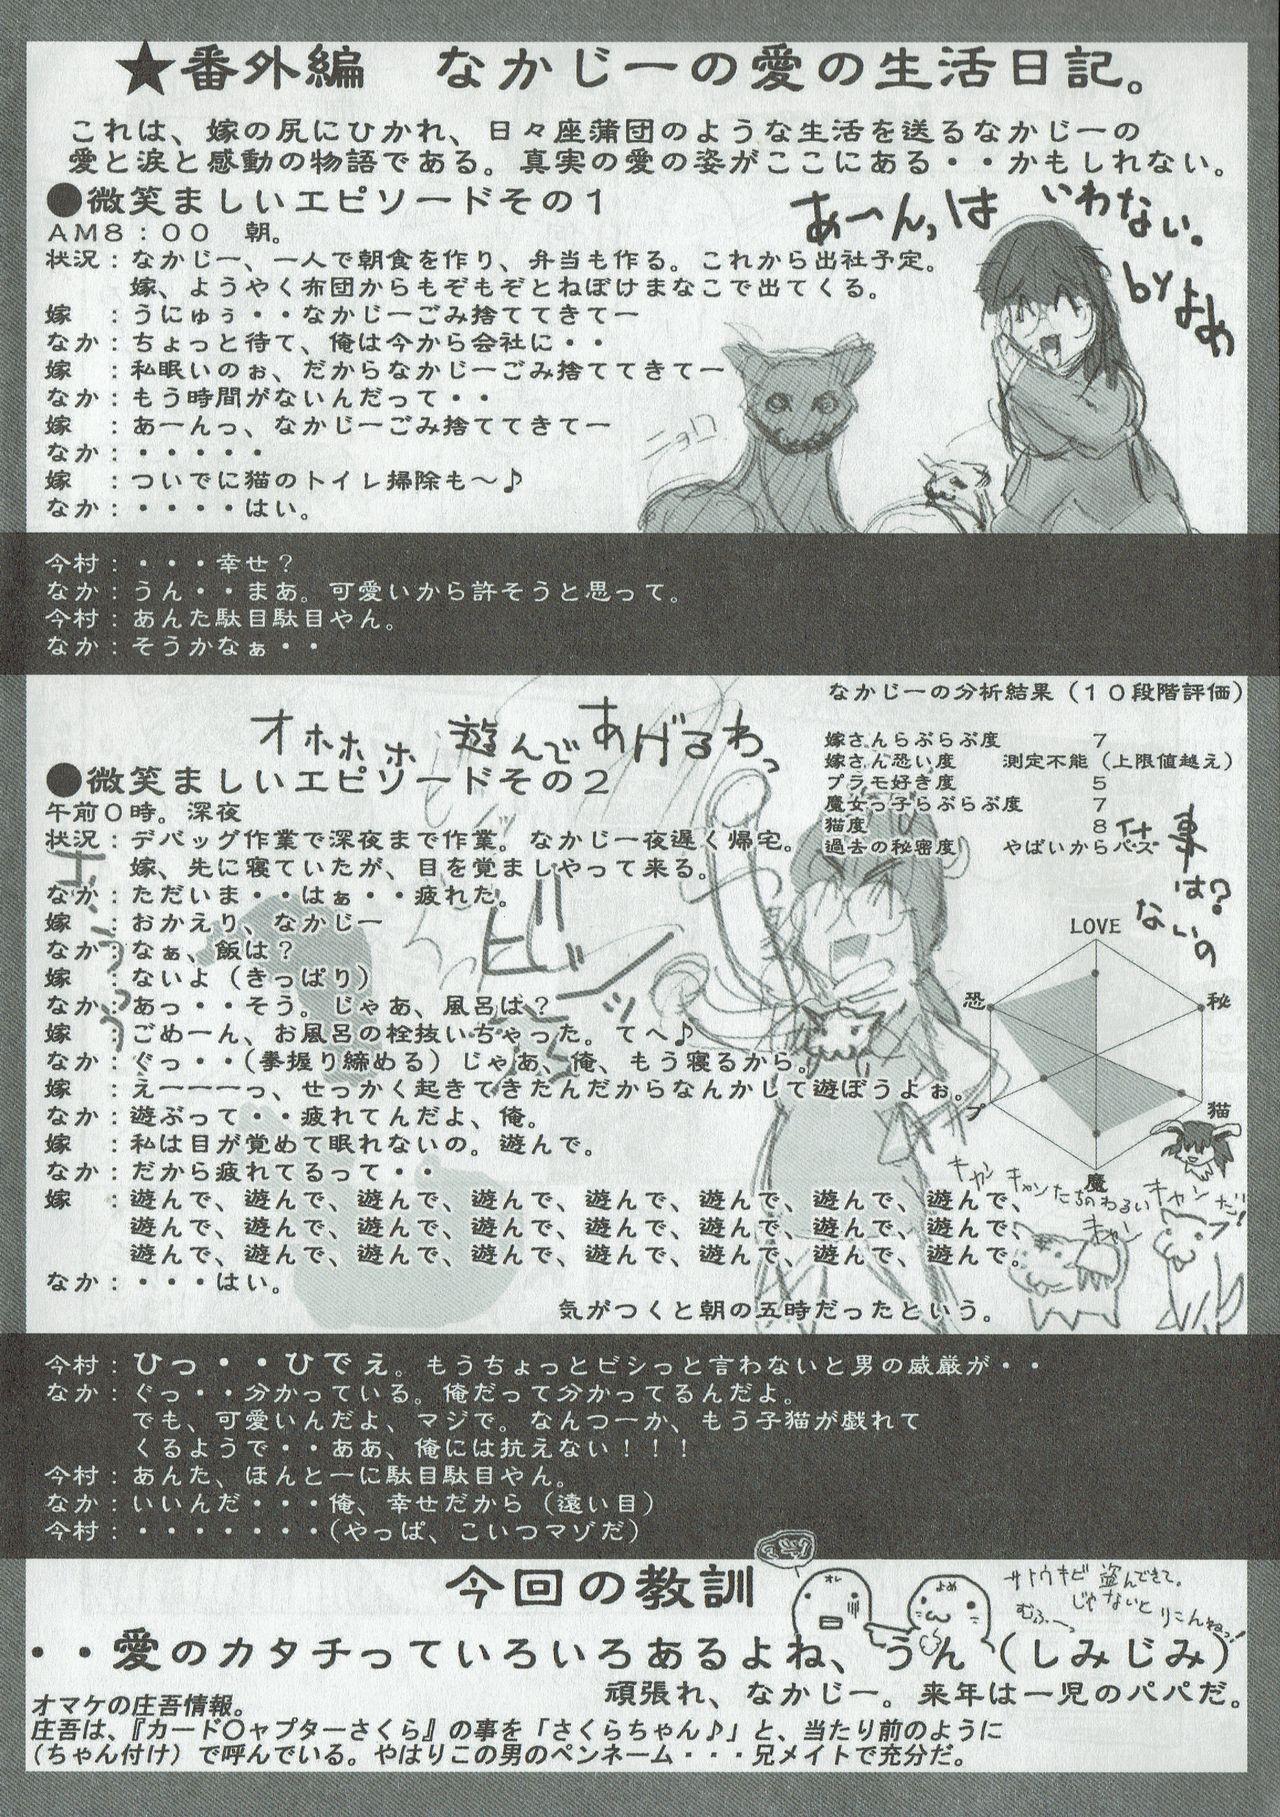 Arisu no Denchi Bakudan Vol. 09 10